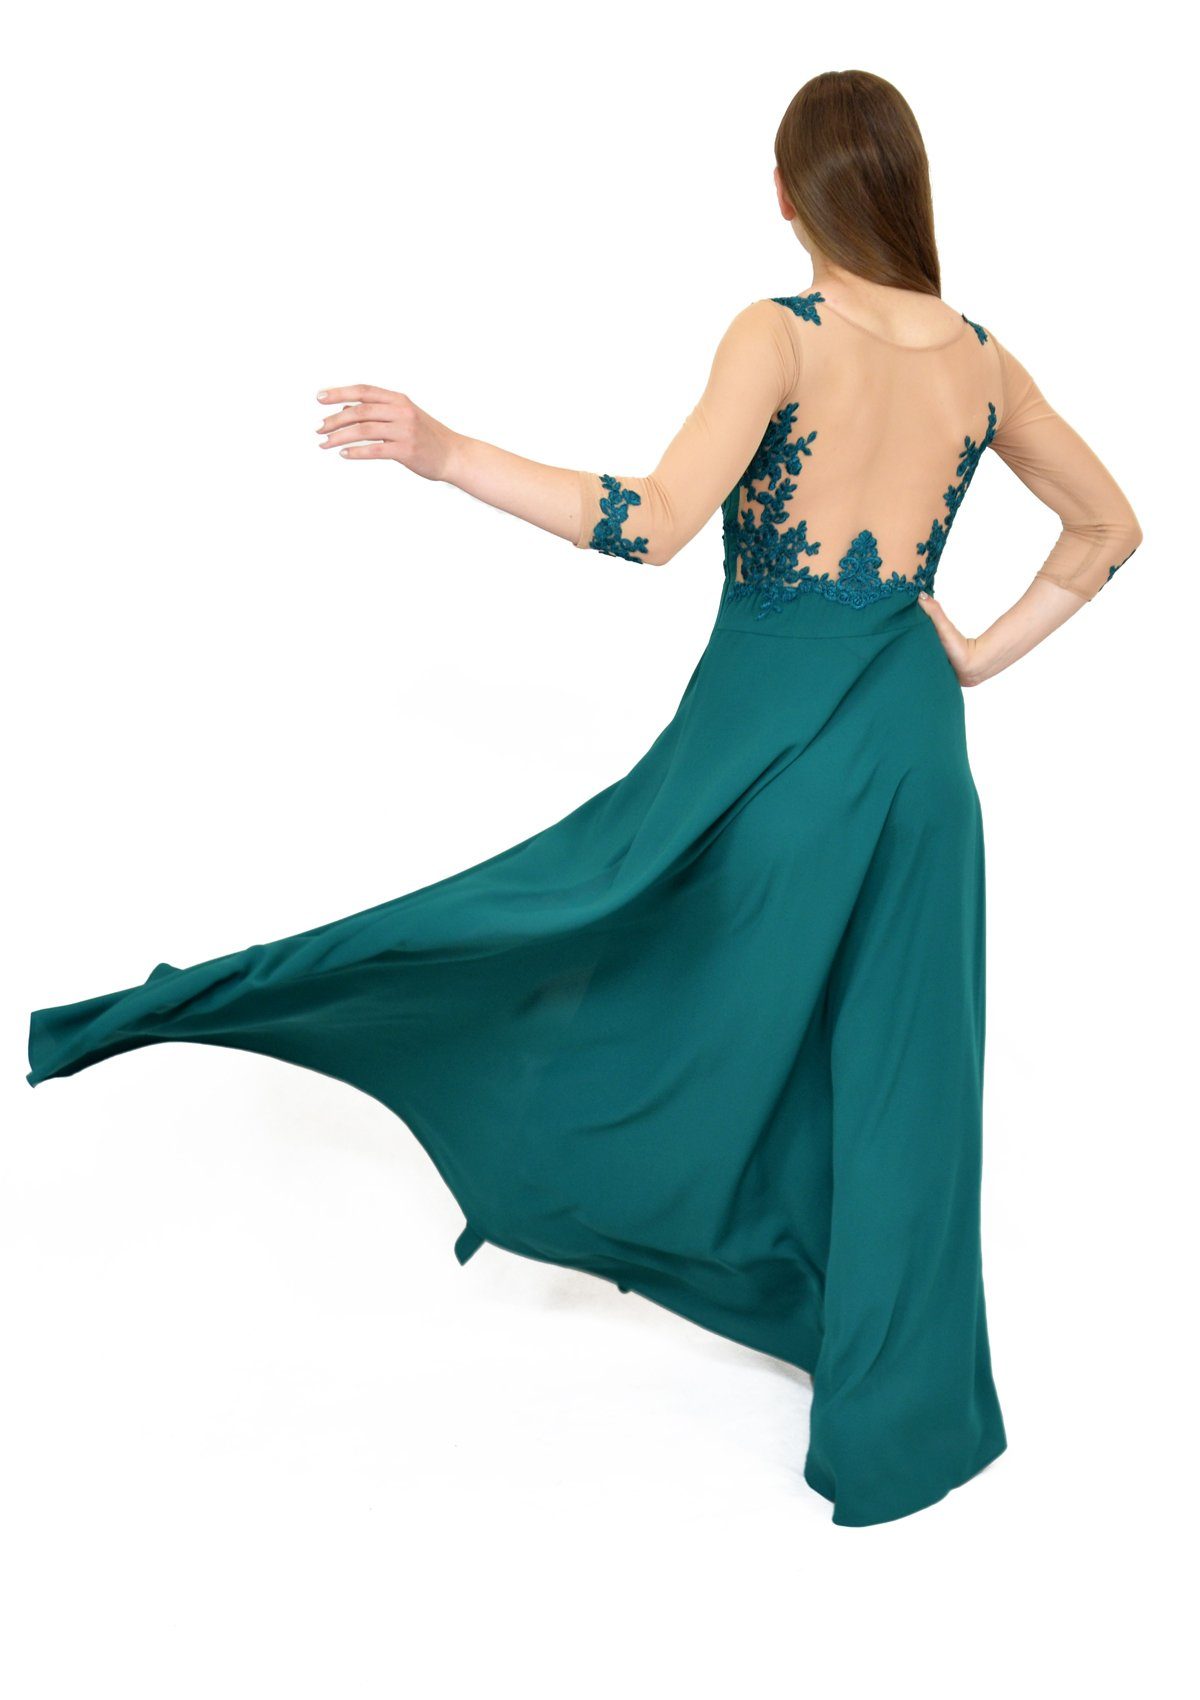 Rochie cusută manual cu mâneci din plasă, verde turcoaz Rochie R80106 